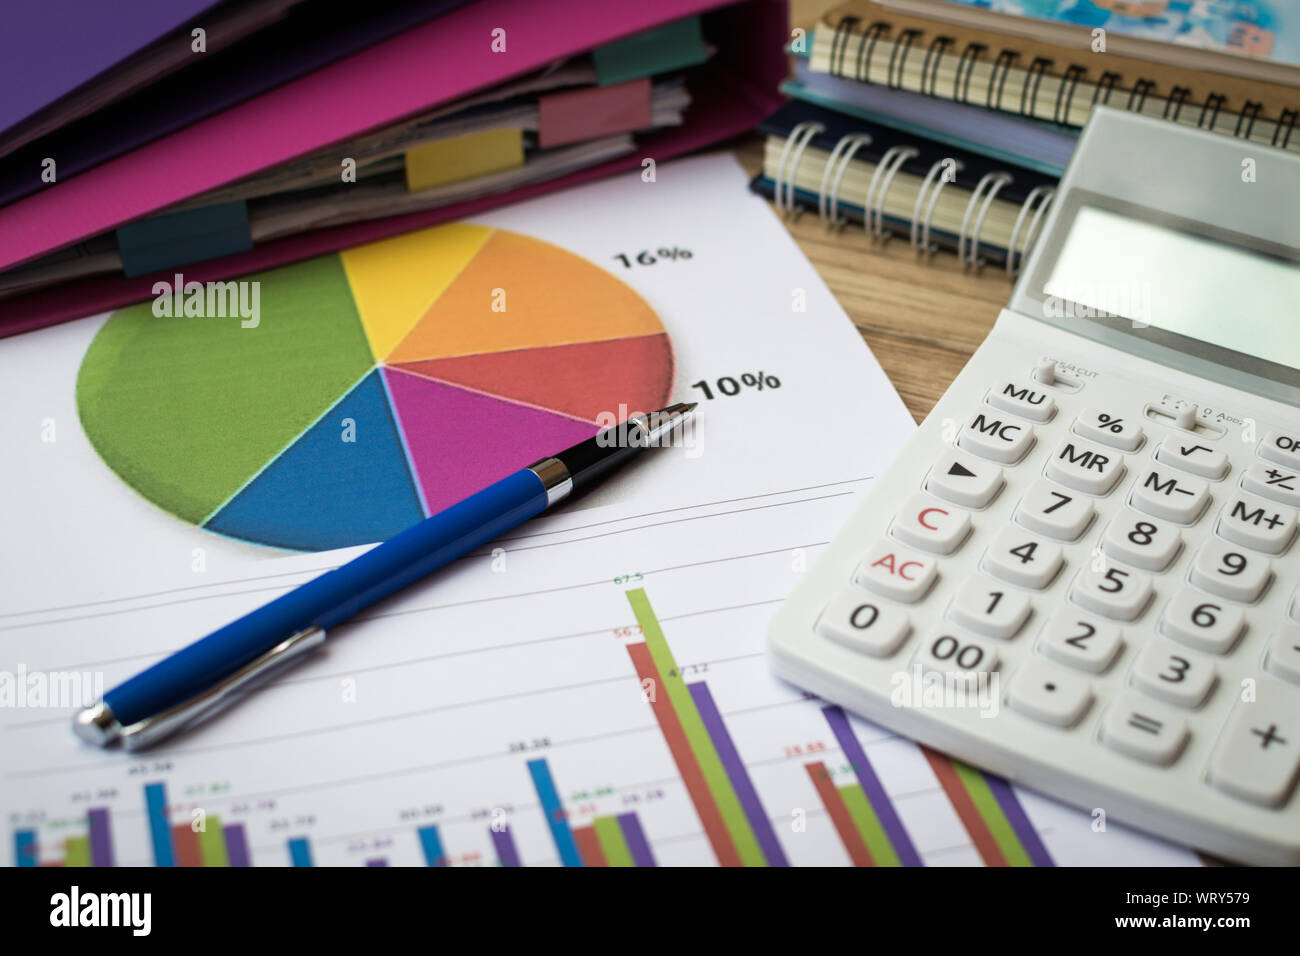 Finances graphique avec stylo, calculatrice et pile de documents sur la table. Affaires et finance concept. Banque D'Images